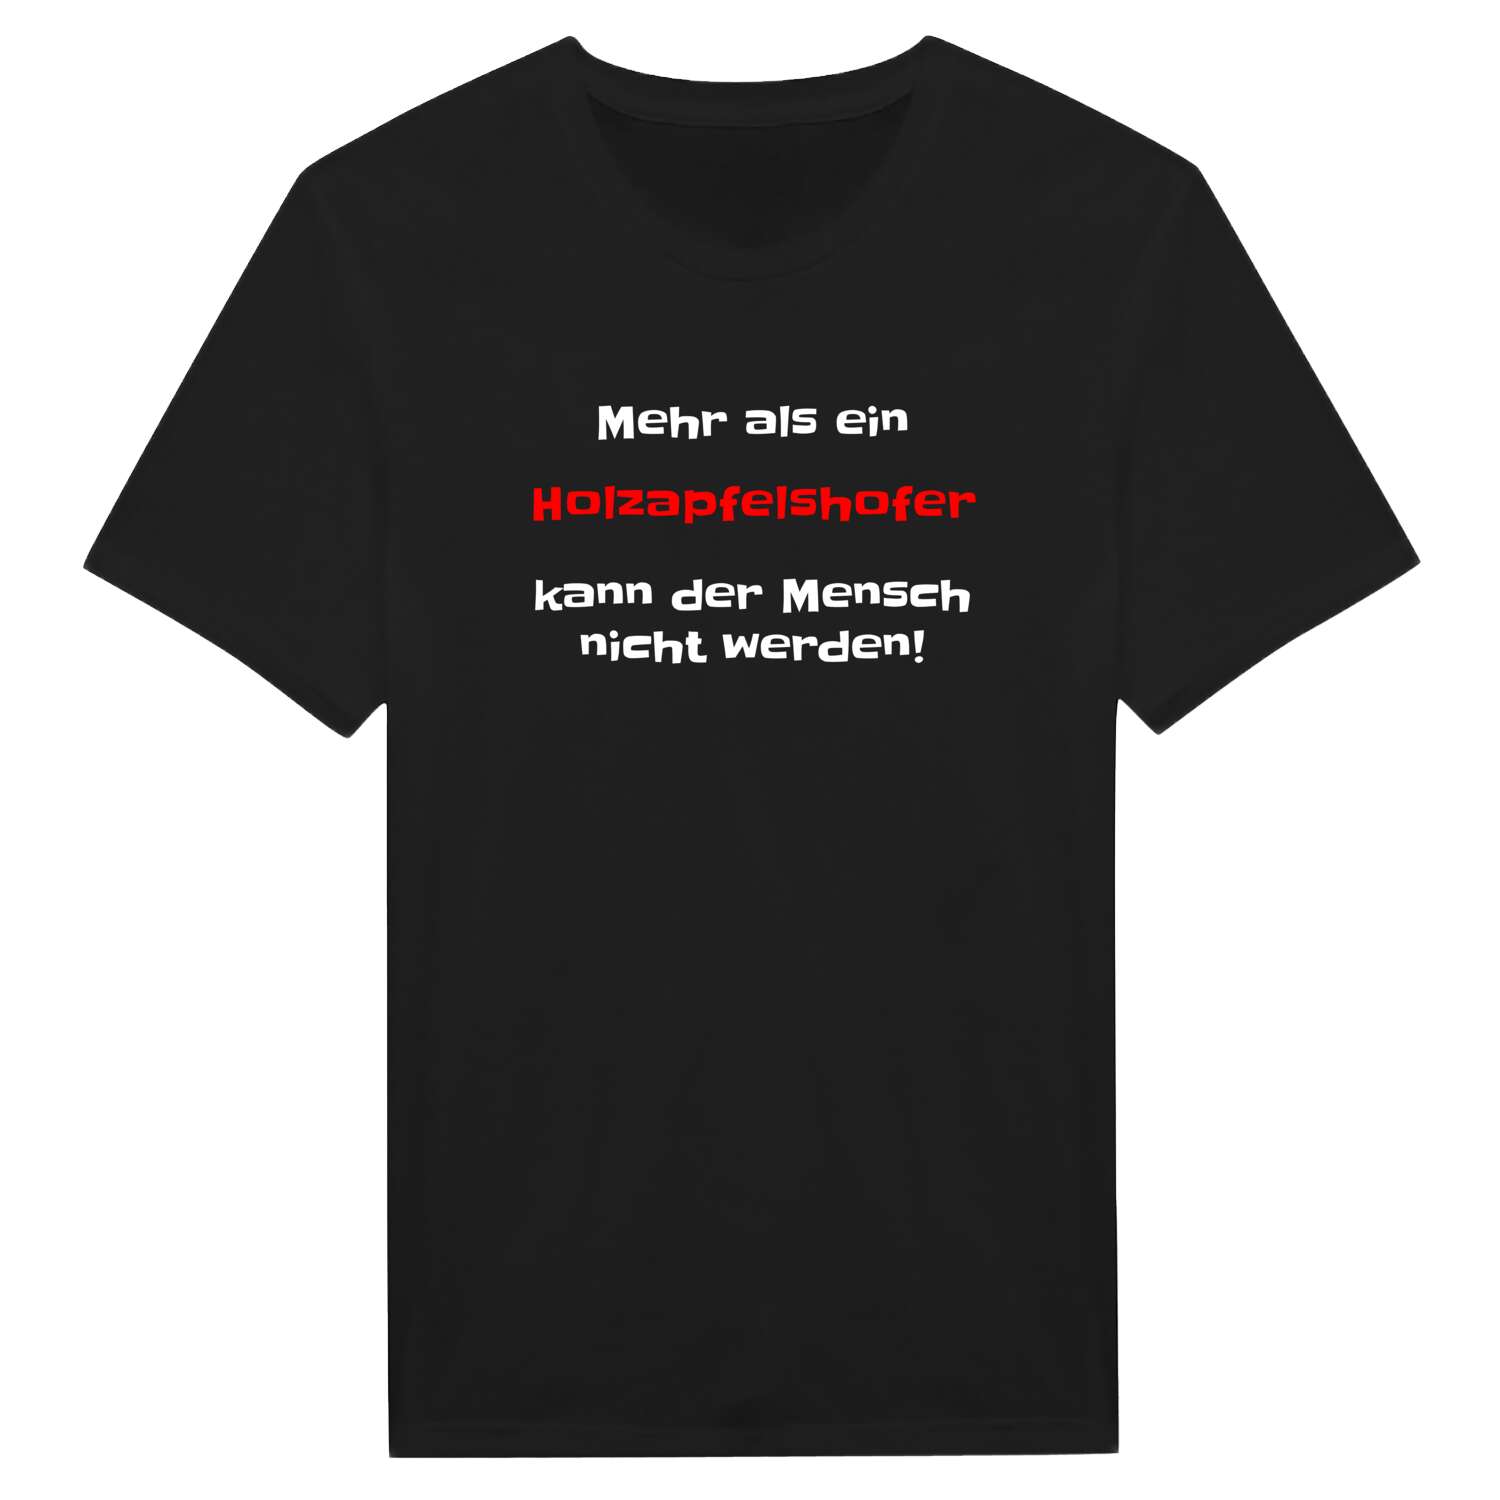 Holzapfelshof T-Shirt »Mehr als ein«